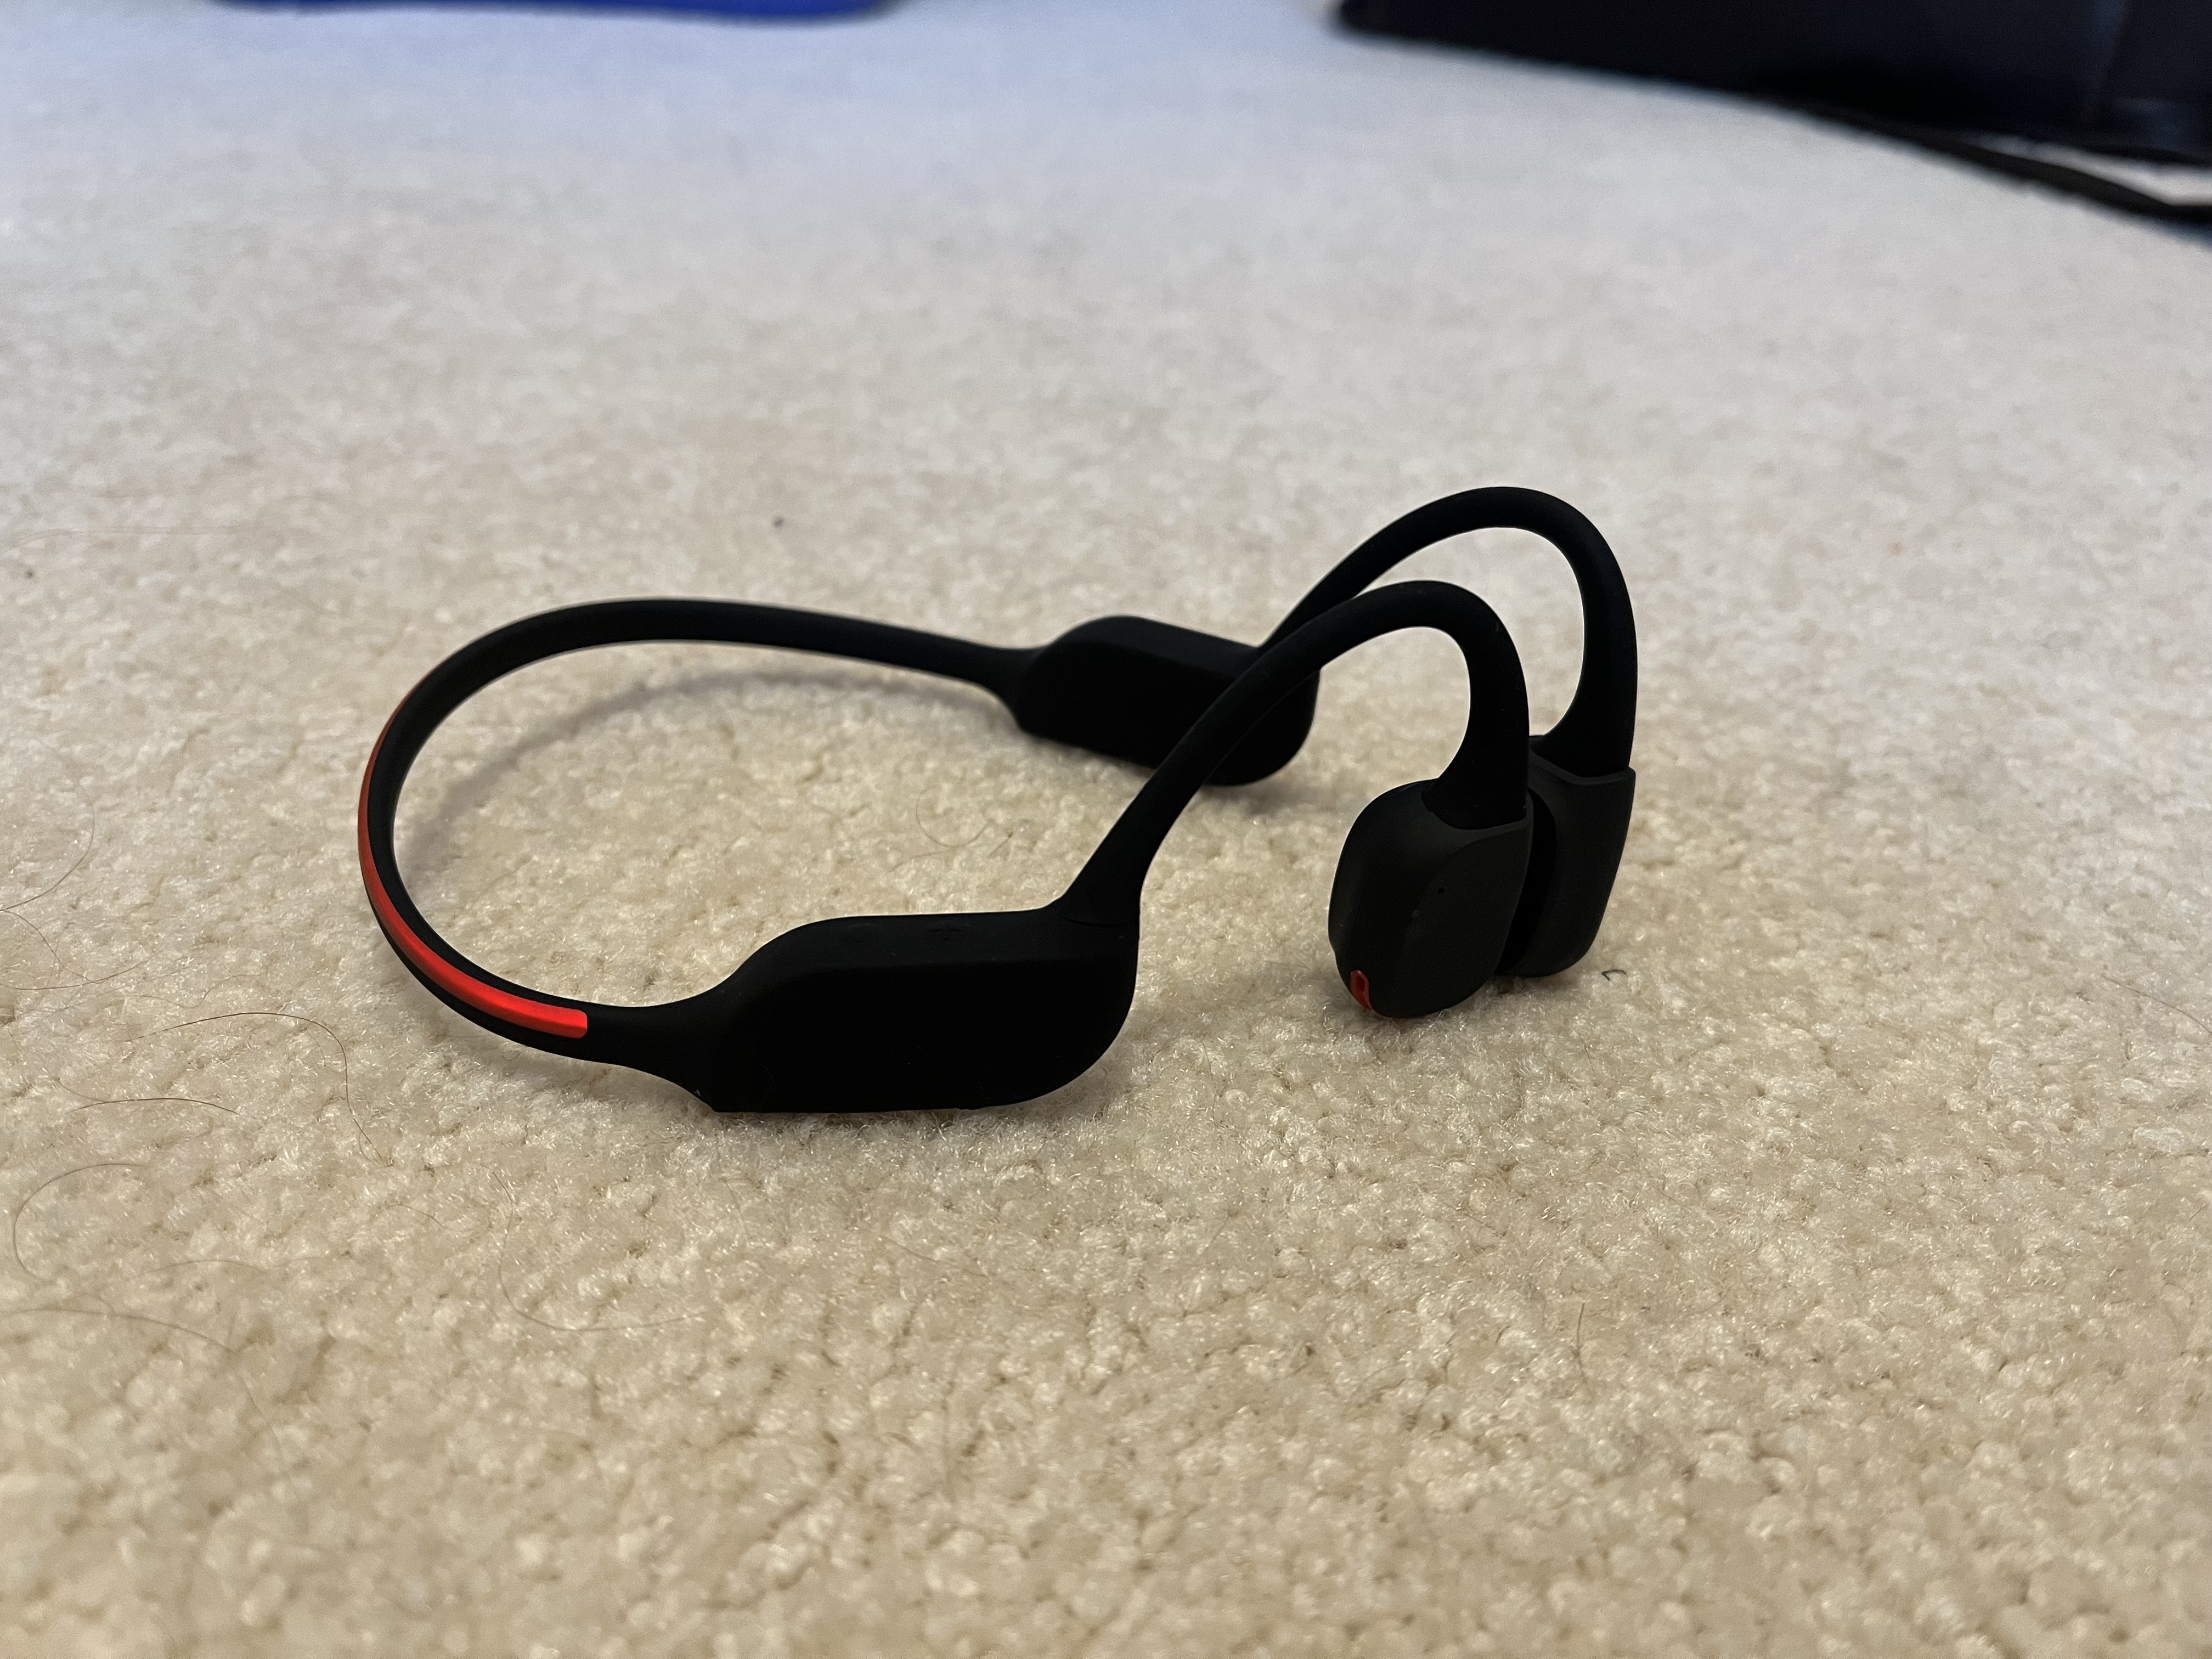 Philips GO A7607 sport headphones review: Good features, unique design